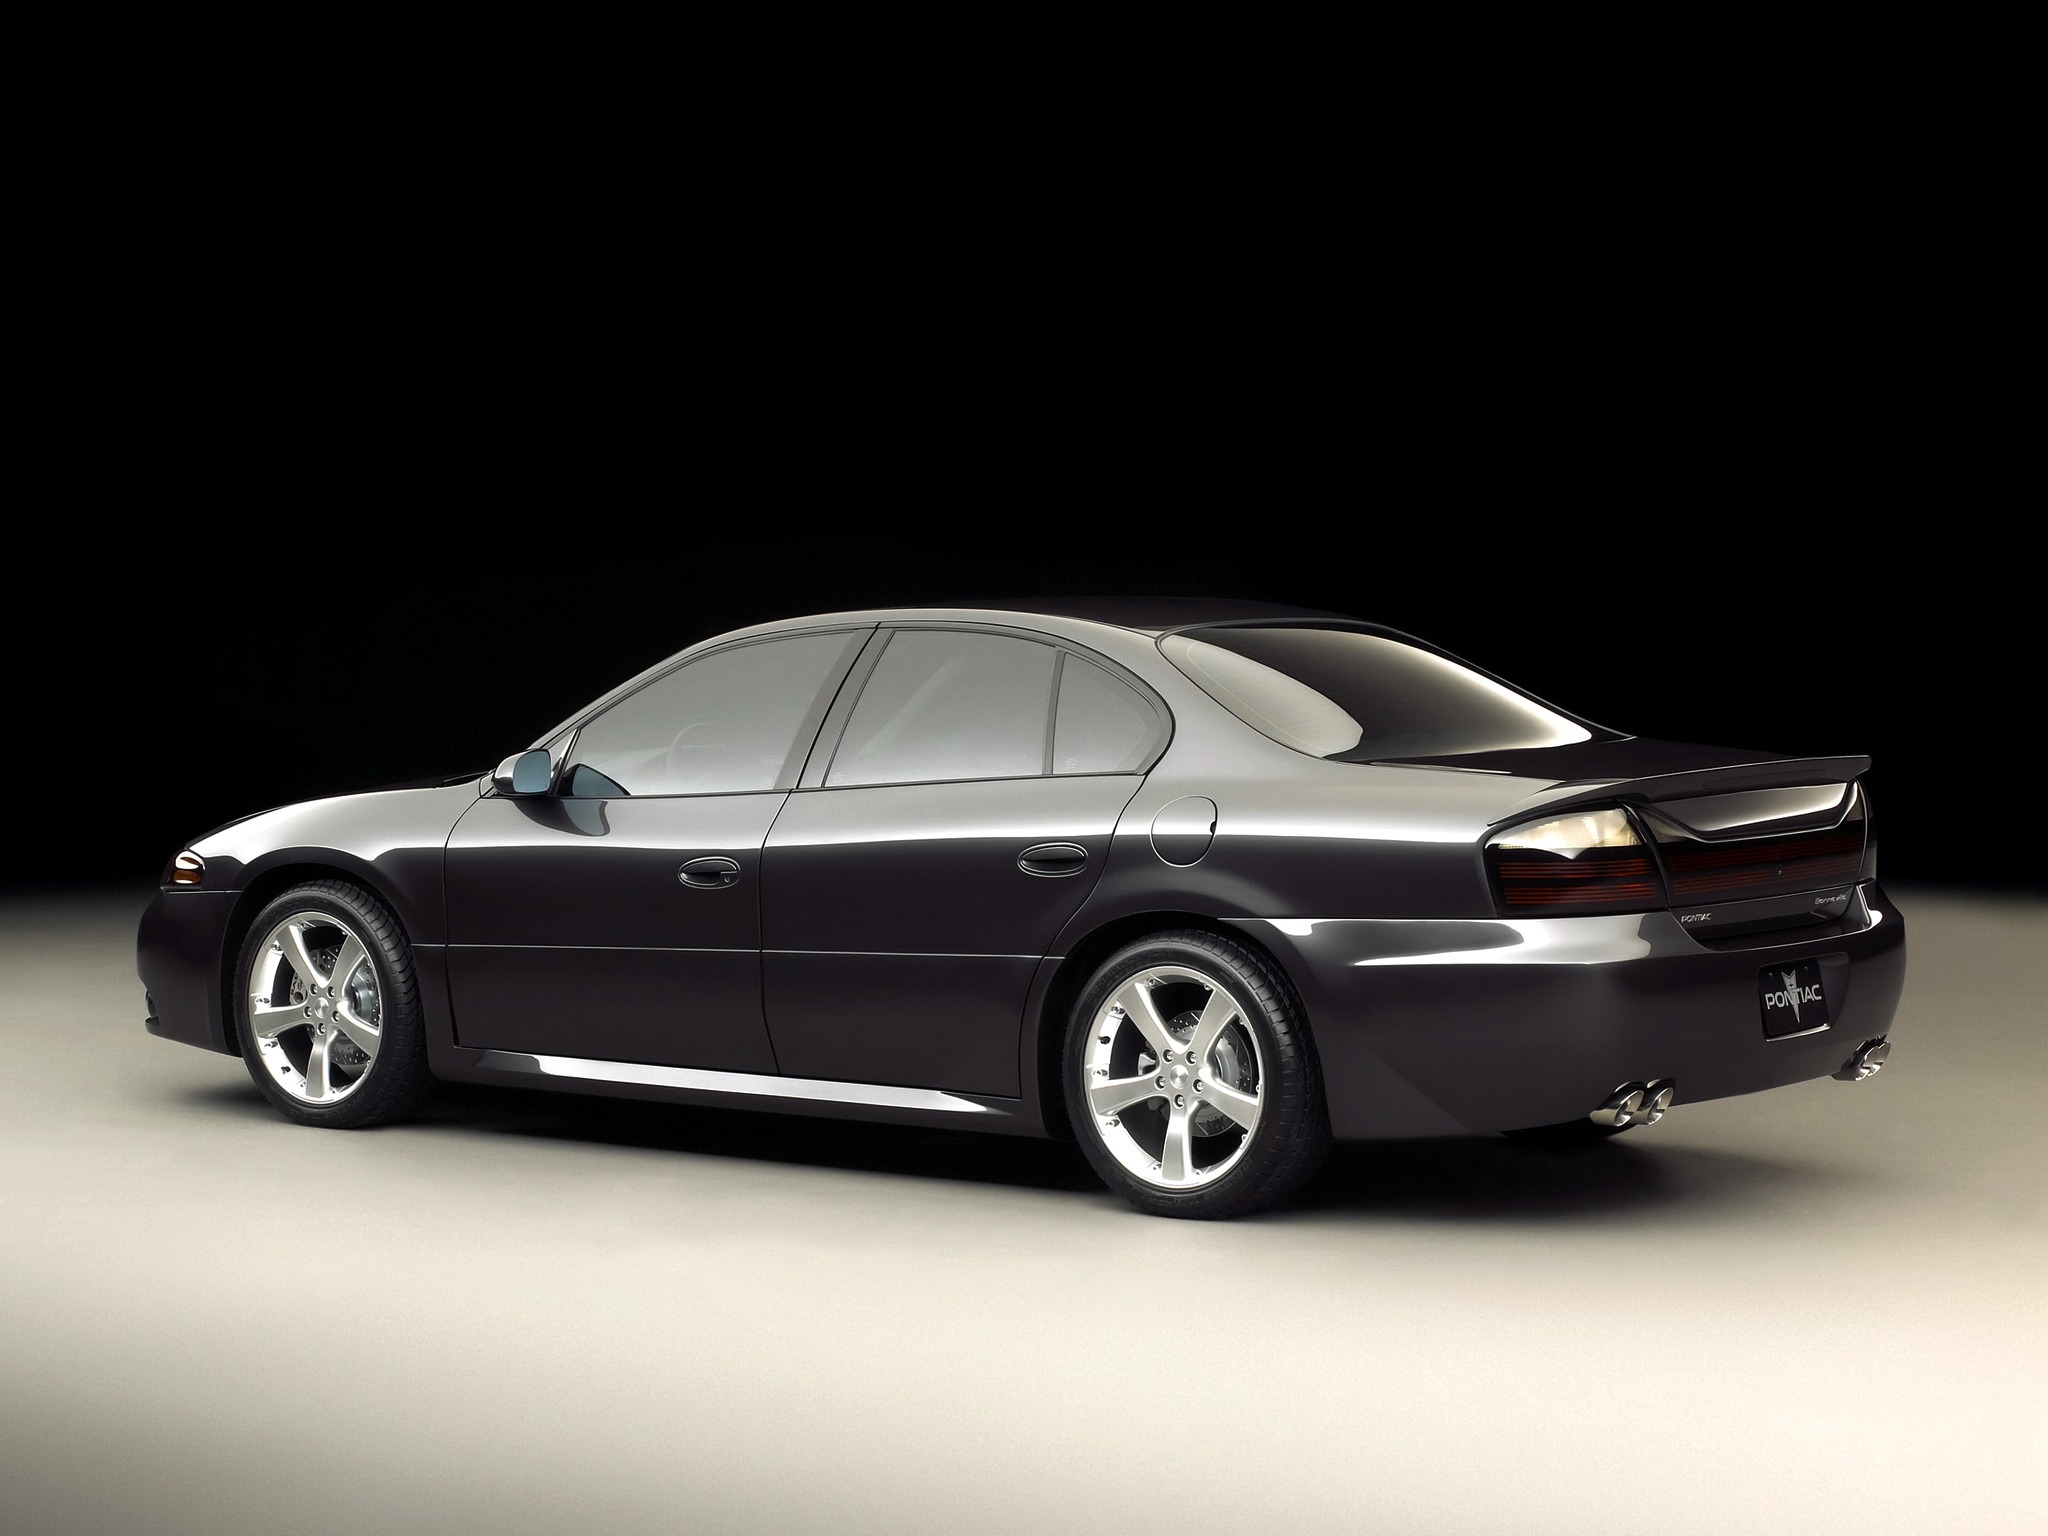 Pontiac Bonneville GXP Concept (2002) - Old Concept Cars